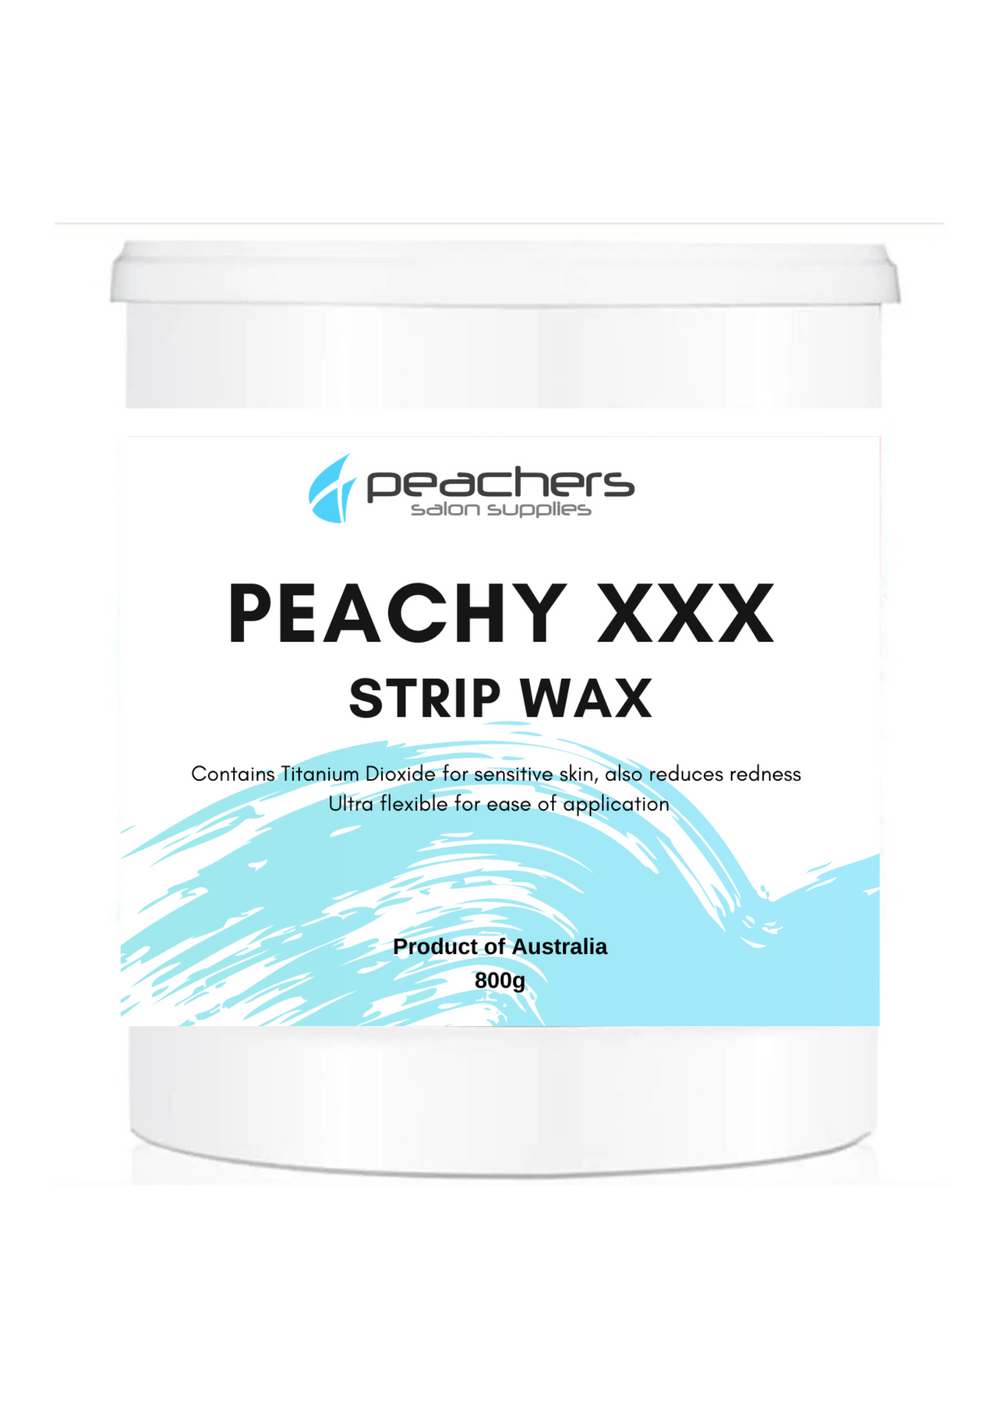 Peachers XXX hard wax